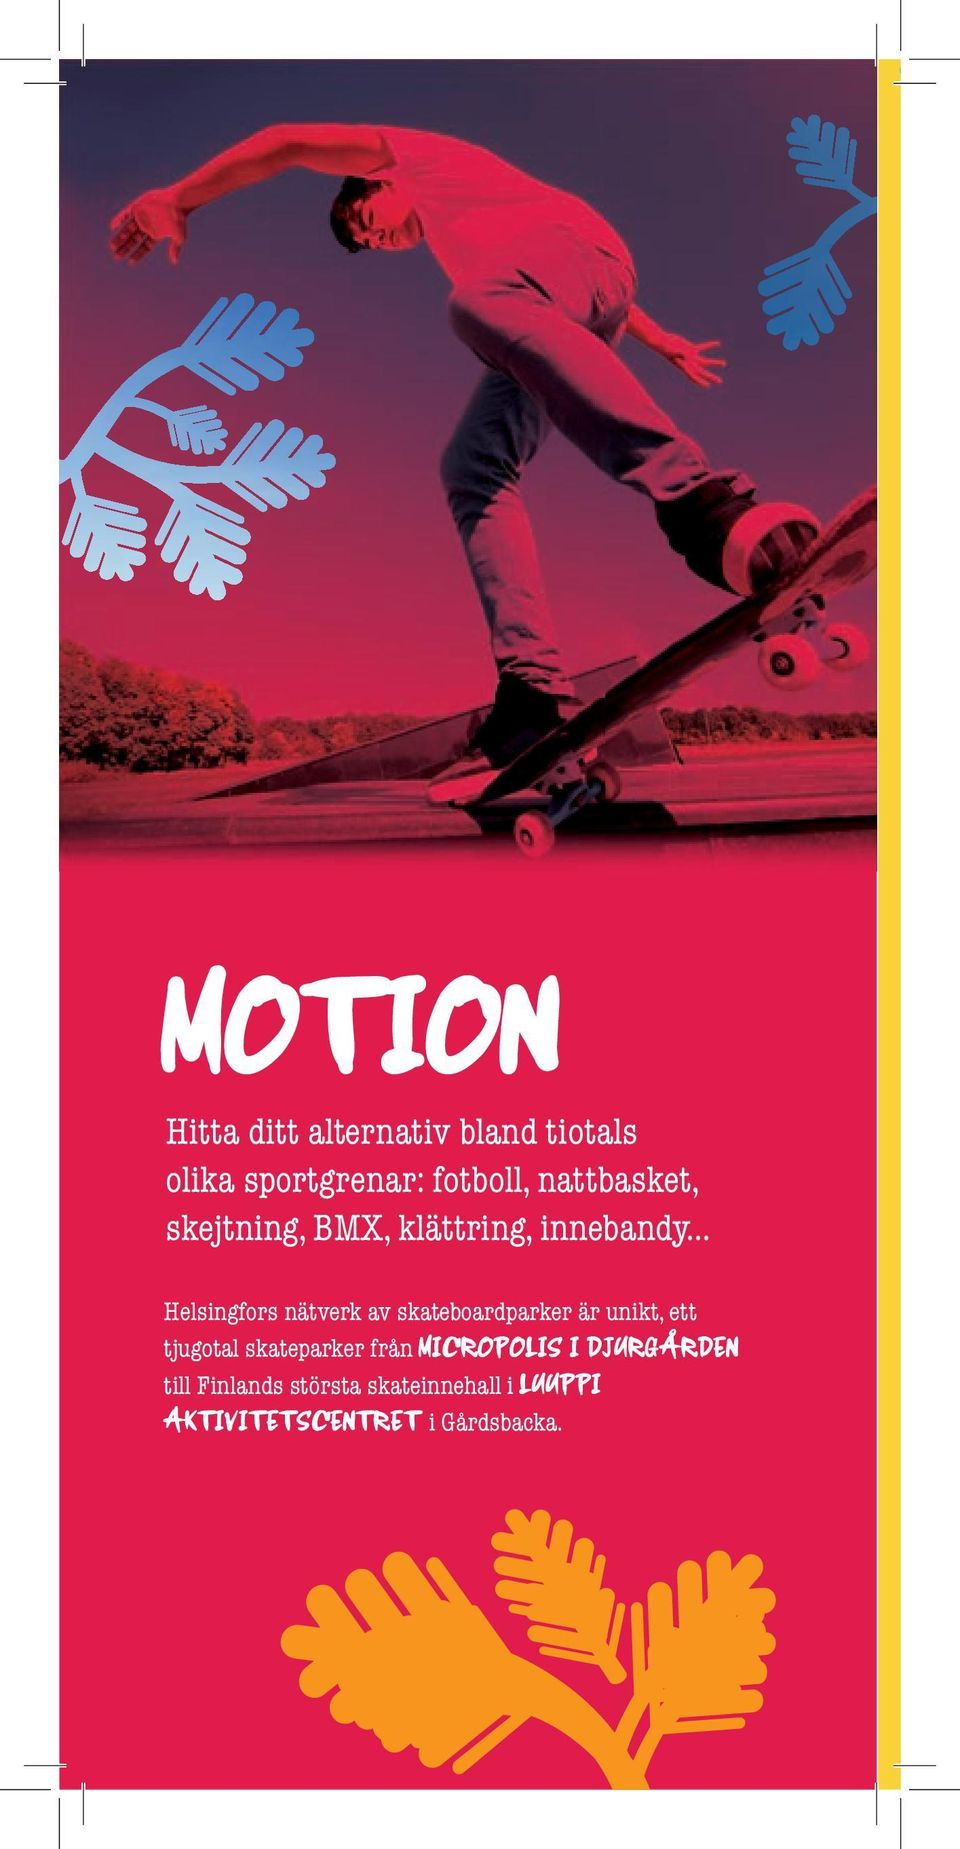 .. Helsingfors nätverk av skateboardparker är unikt, ett tjugotal